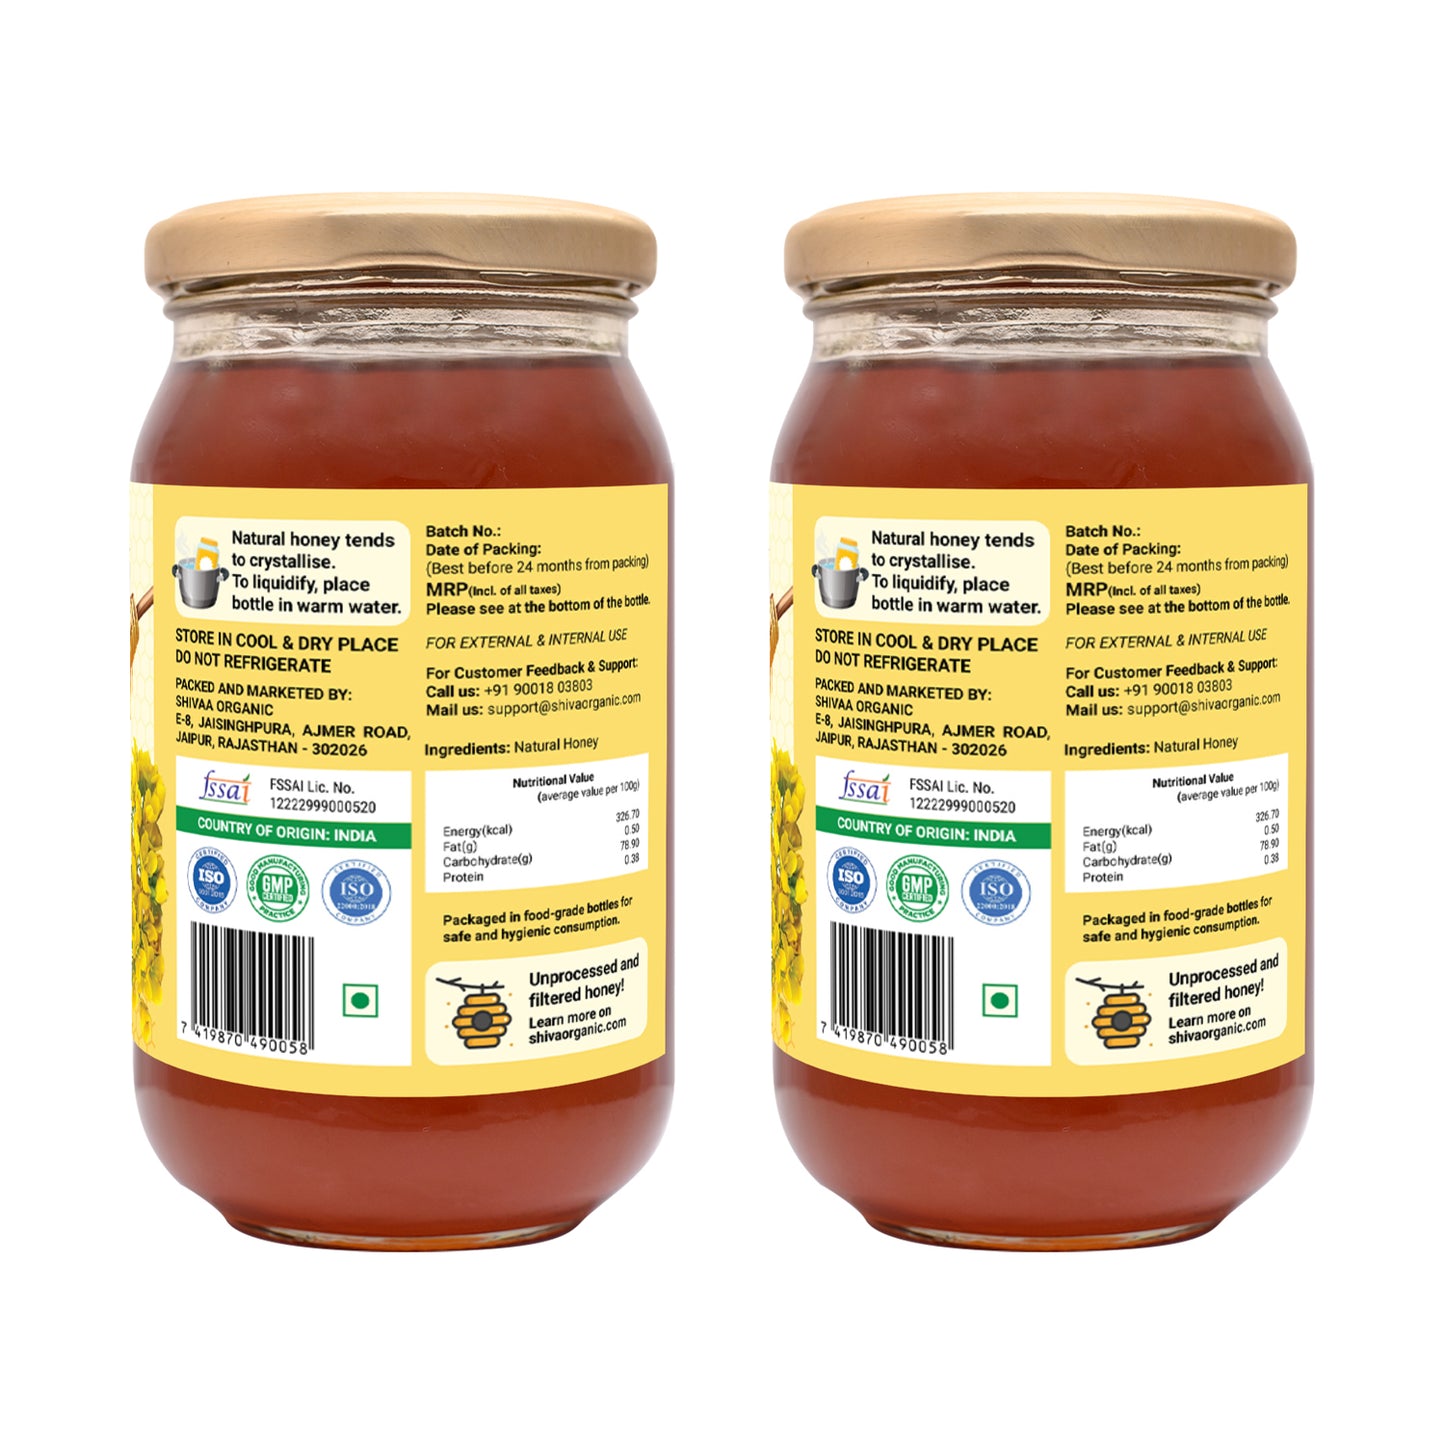 1kg | Buy Best Pure Raw Honey | Shiva Organic